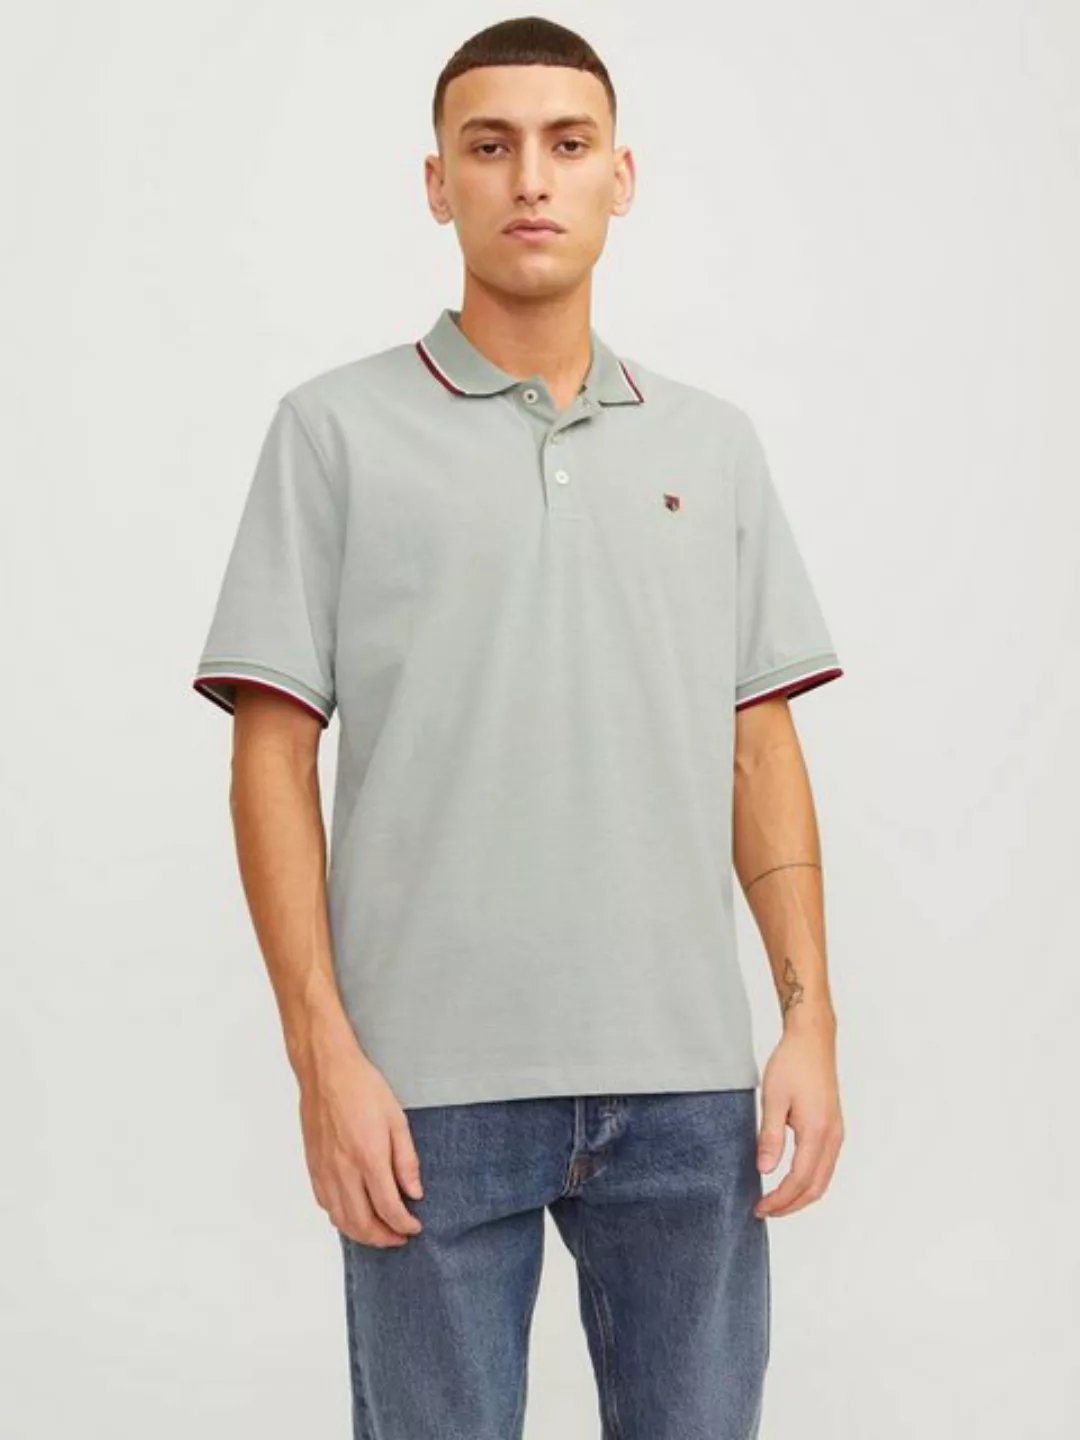 Jack & Jones T-Shirt Polo T-Shirt Pique Kurzarm Hemd Basic JPRBLUWIN 5525 i günstig online kaufen